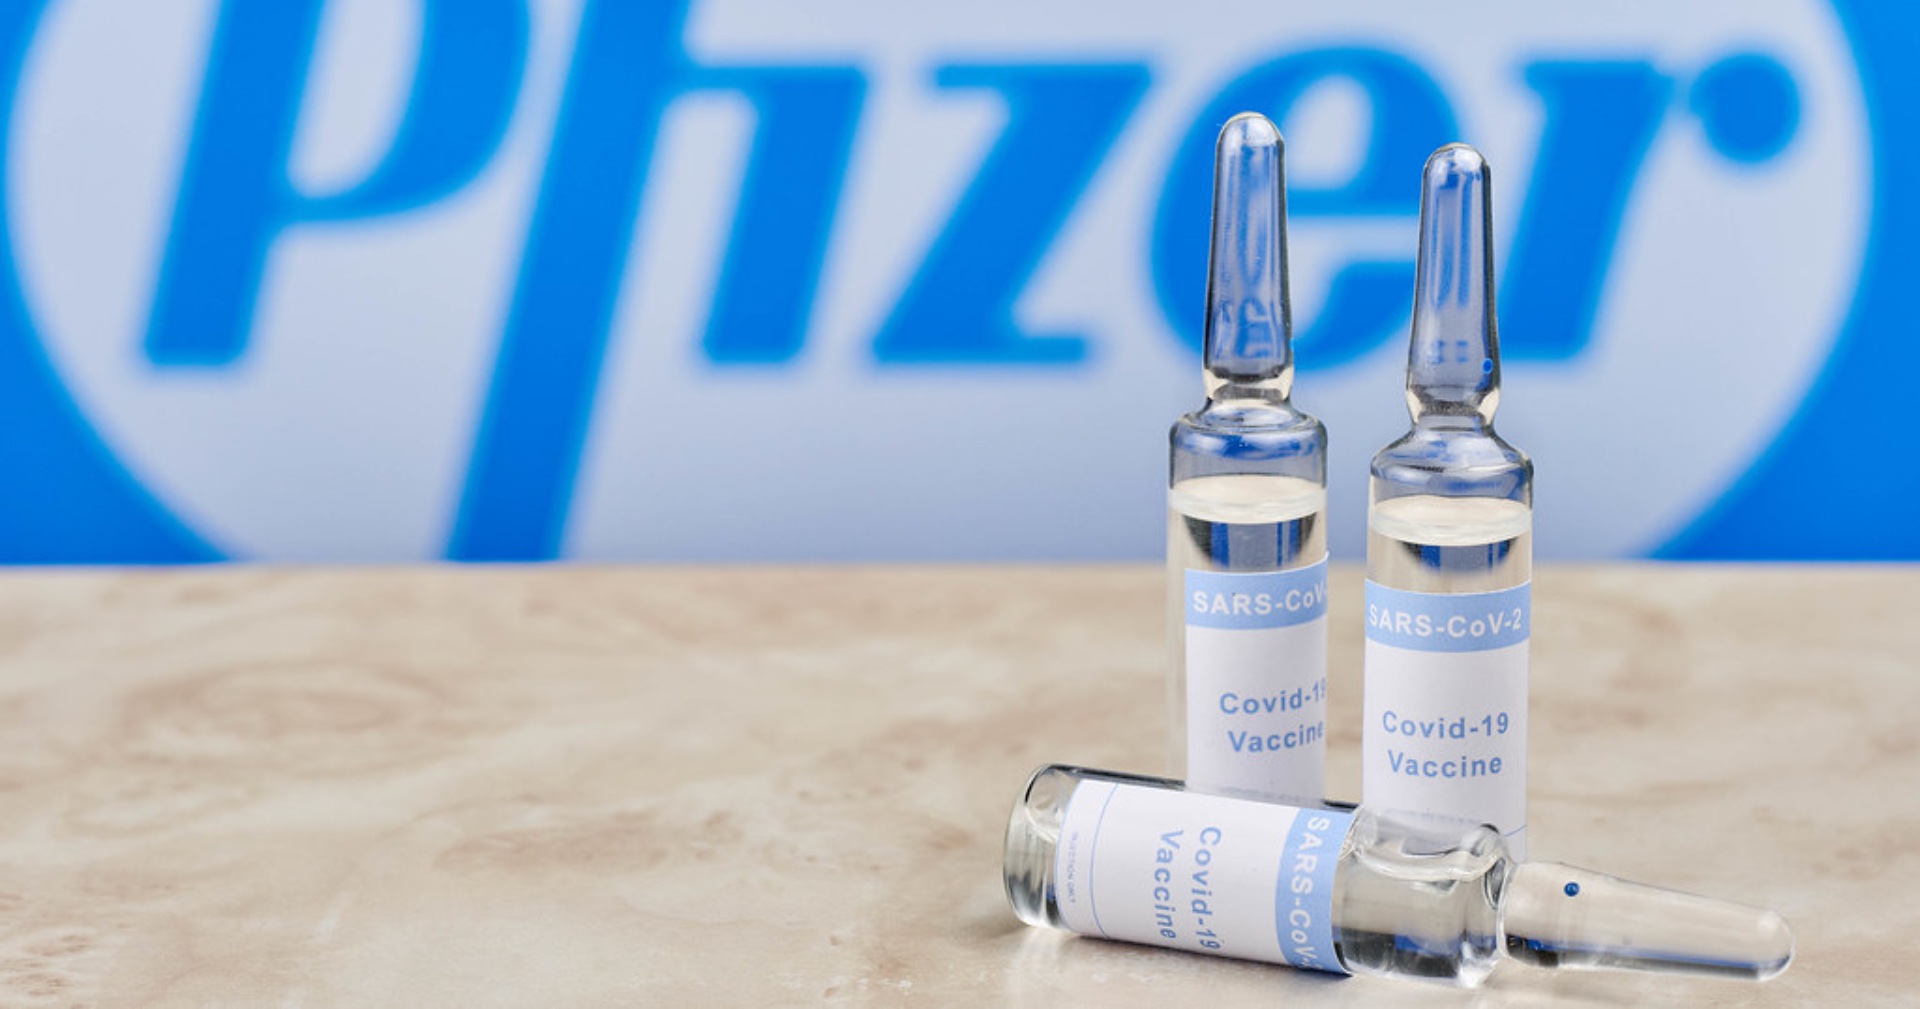 หน่วยงานชี้ วัคซีน Pfizer และ Moderna ช่วยลดความเสี่ยงในการติดเชื้อได้สูงถึง 90% เดินทางได้สบายใจขึ้น